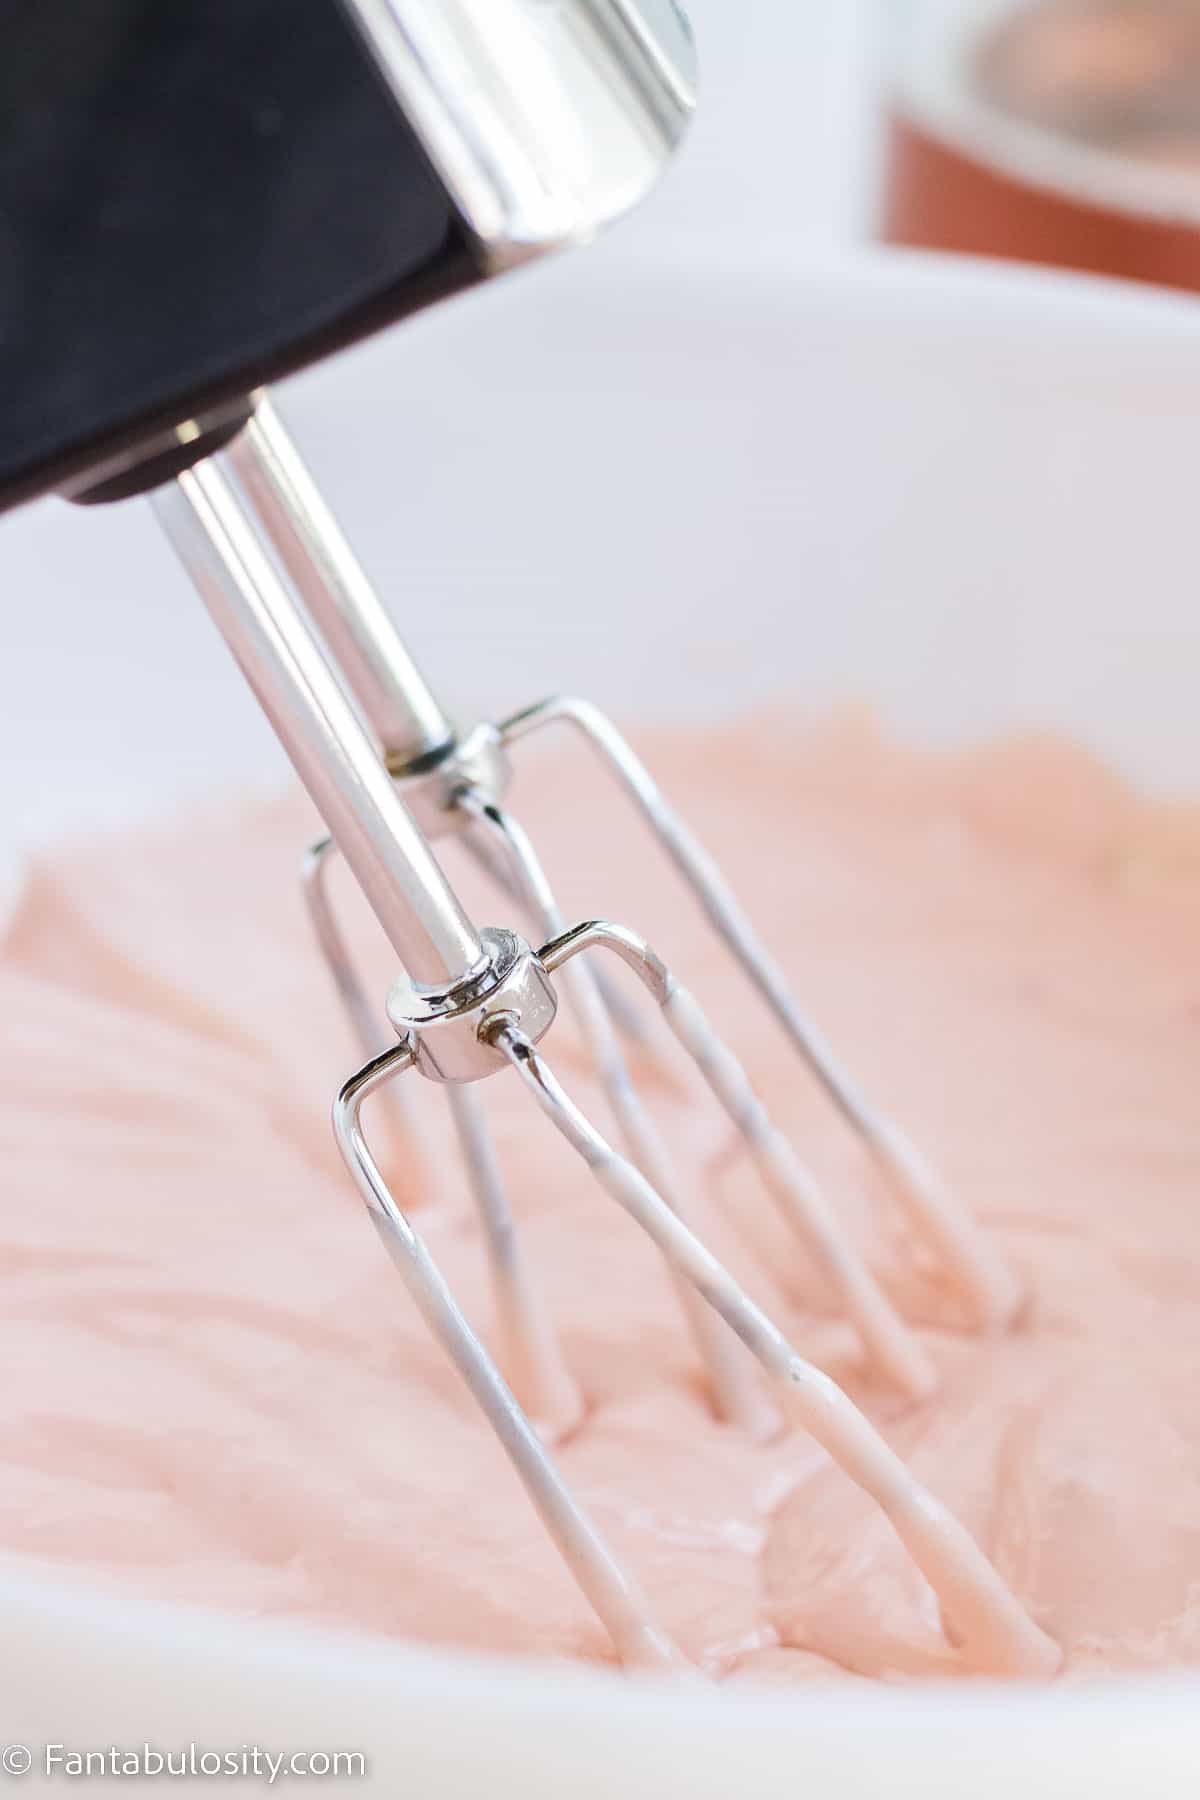 Hand mixer mixing cupcakes in mixing bowl.